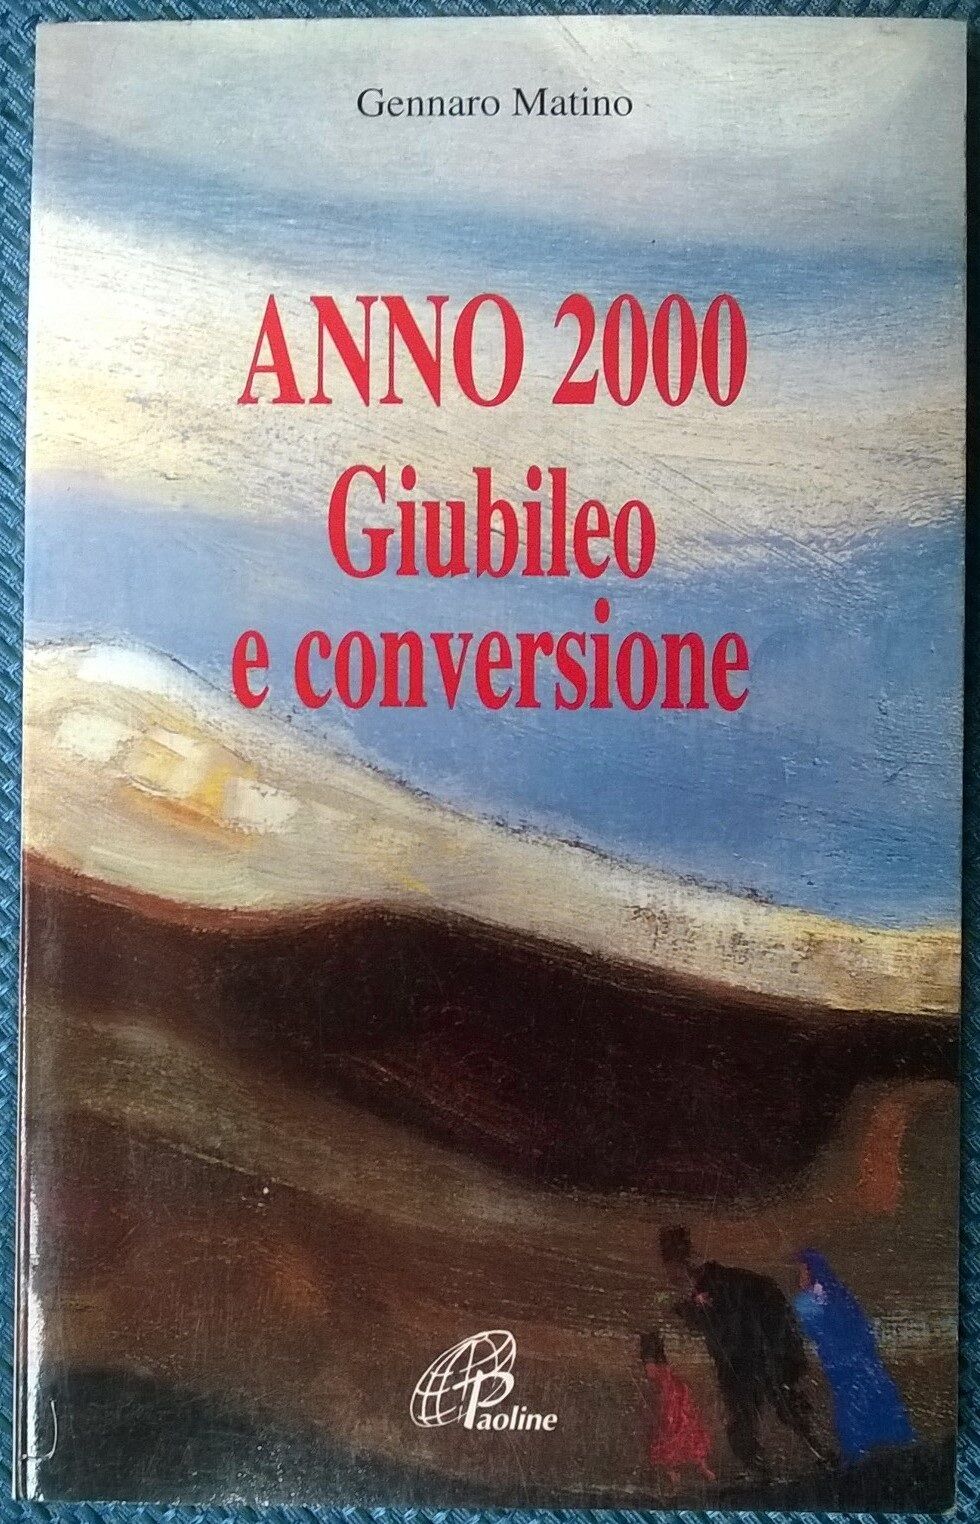 Anno 2000 Giubileo e conversione - Gennaro Matino - 1997, Paoline - L  libro usato